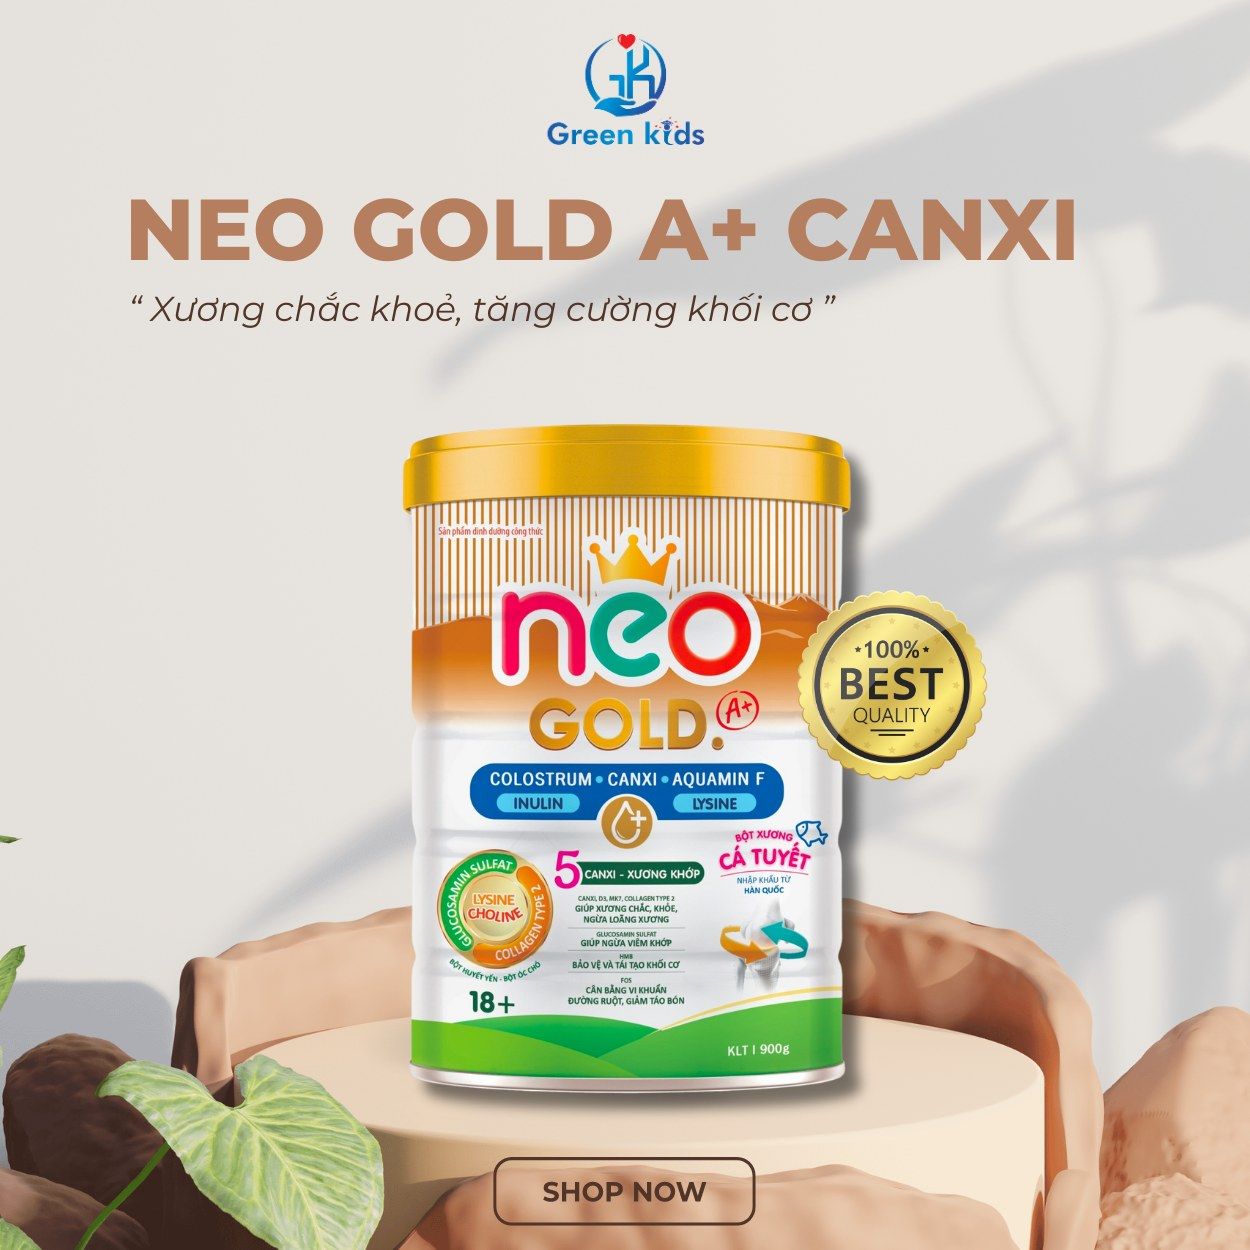 Cùng Neo Gold A+ đồng hành cùng sức khỏe gia đình Việt - 3